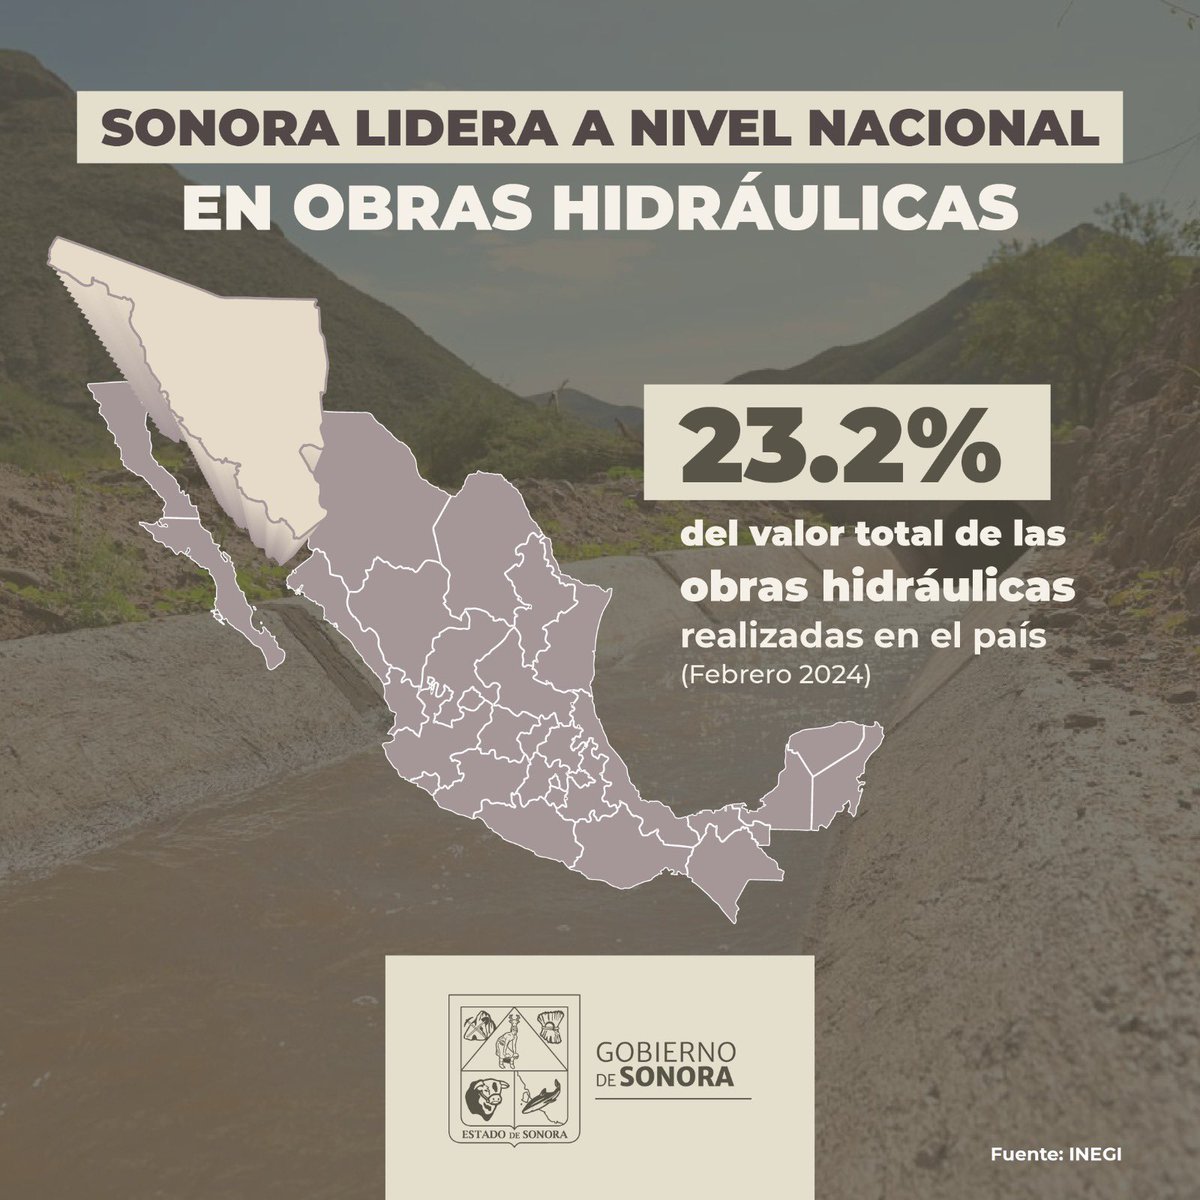 Me alegra compartirles que, de acuerdo al INEGI, Sonora concentró el 23.2% del valor total de las obras hidráulicas realizadas en el país durante febrero. Mediante el Plan Estratégico de Protección Civil en materia hídrica, seguimos trabajando para asegurar el servicio de agua…